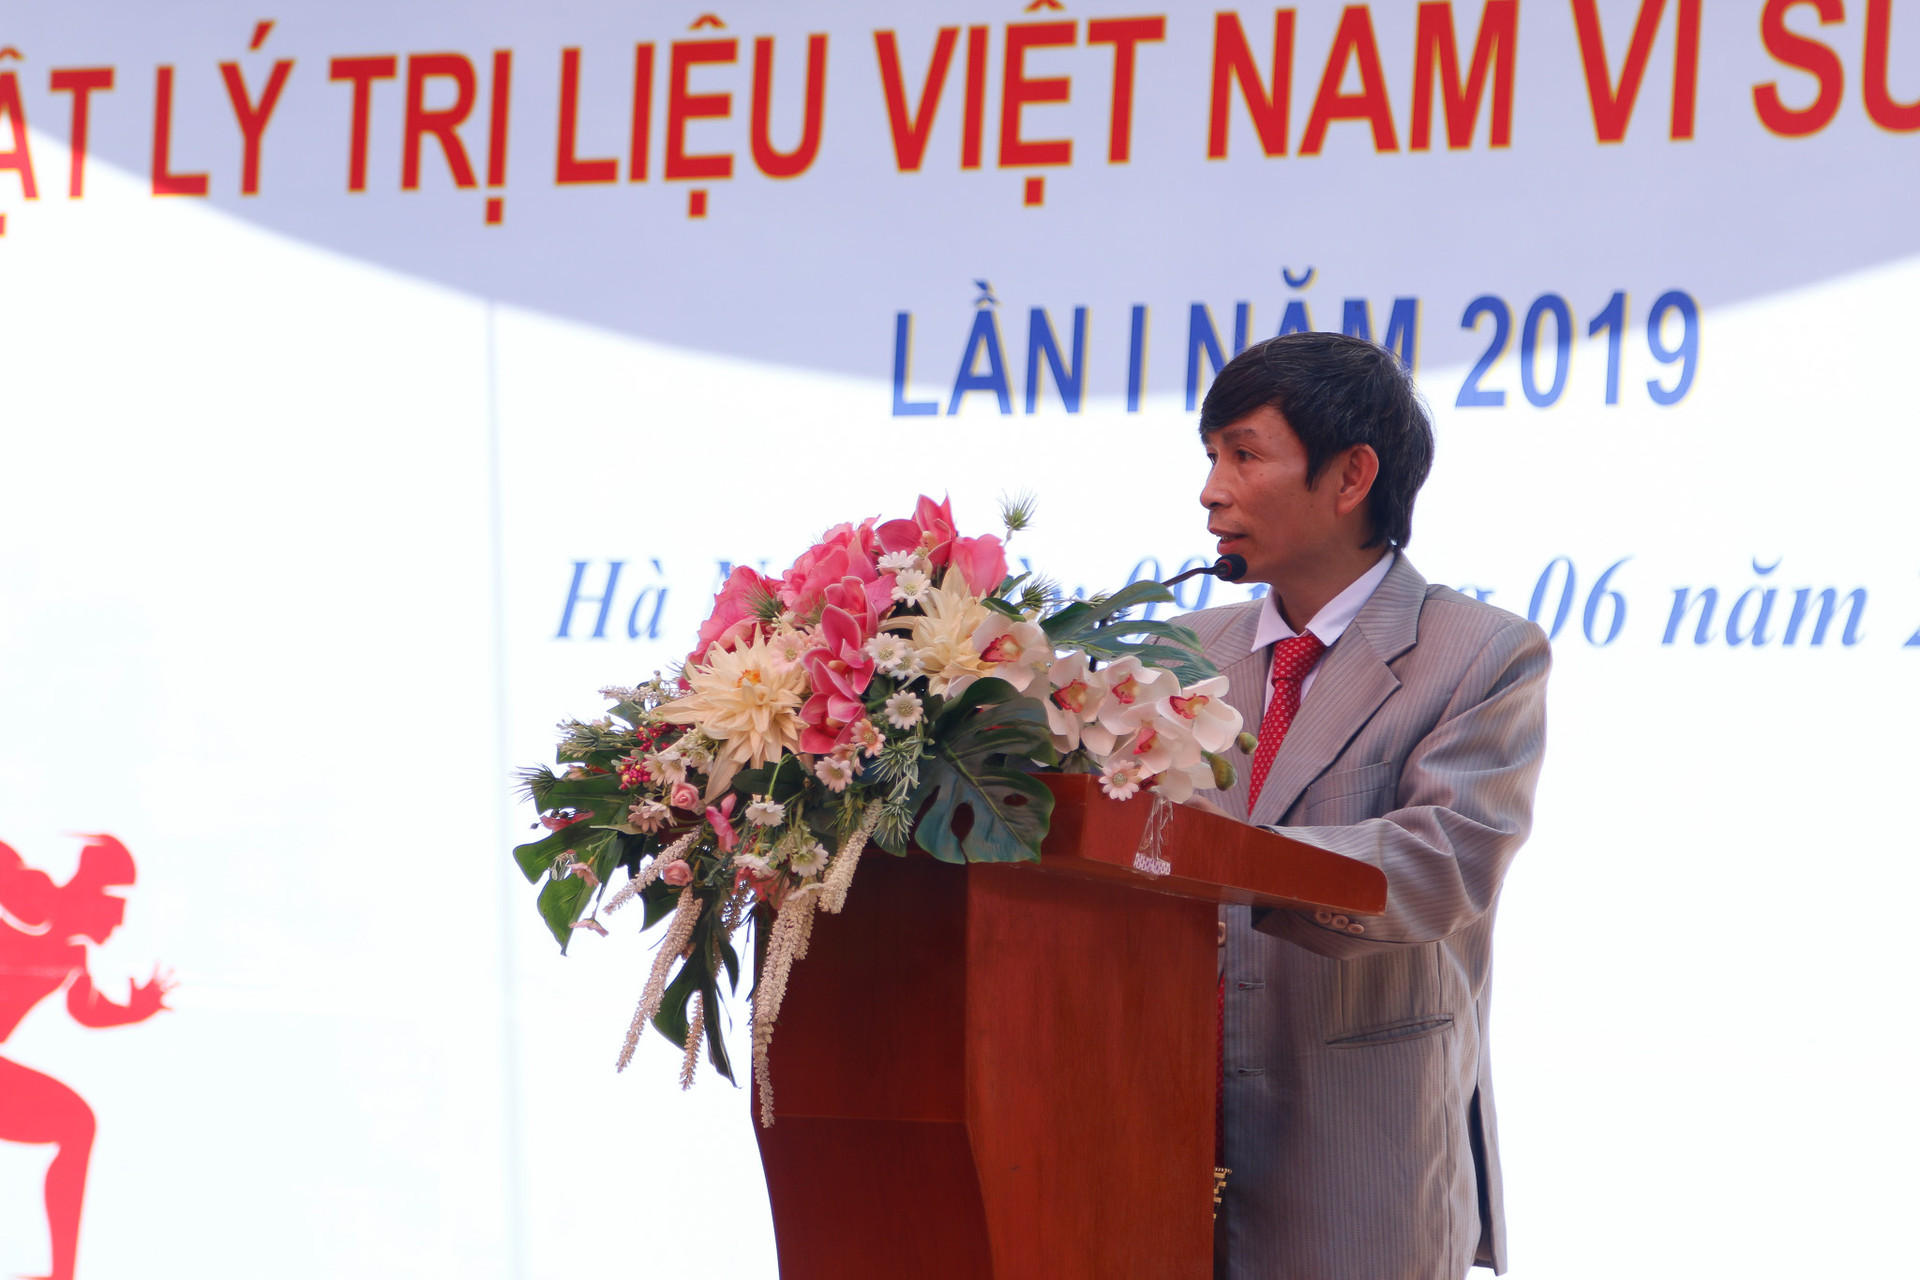 Phát động giải chạy “Ngành Vật lý trị liệu Việt Nam vì sức khỏe cộng đồng”